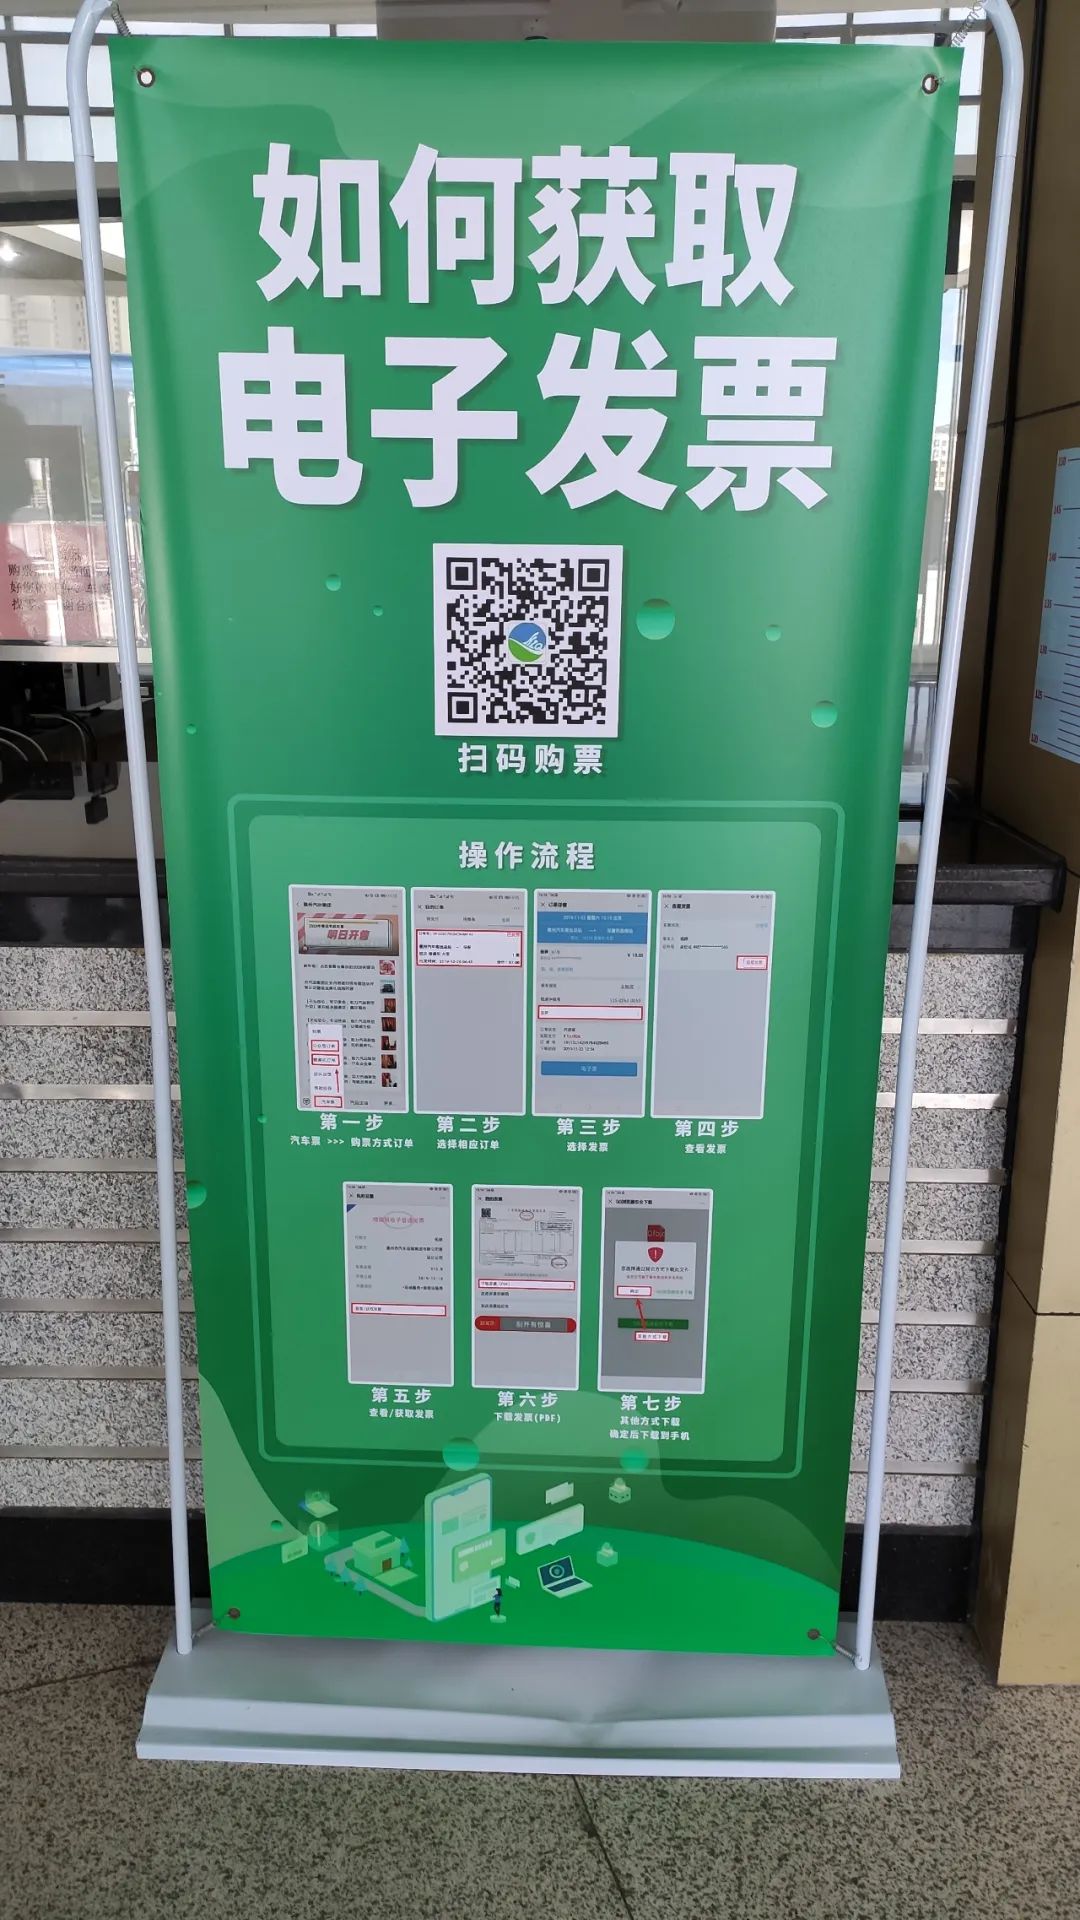 惠州开始全面推行公路电子客票已有16个客运站上线